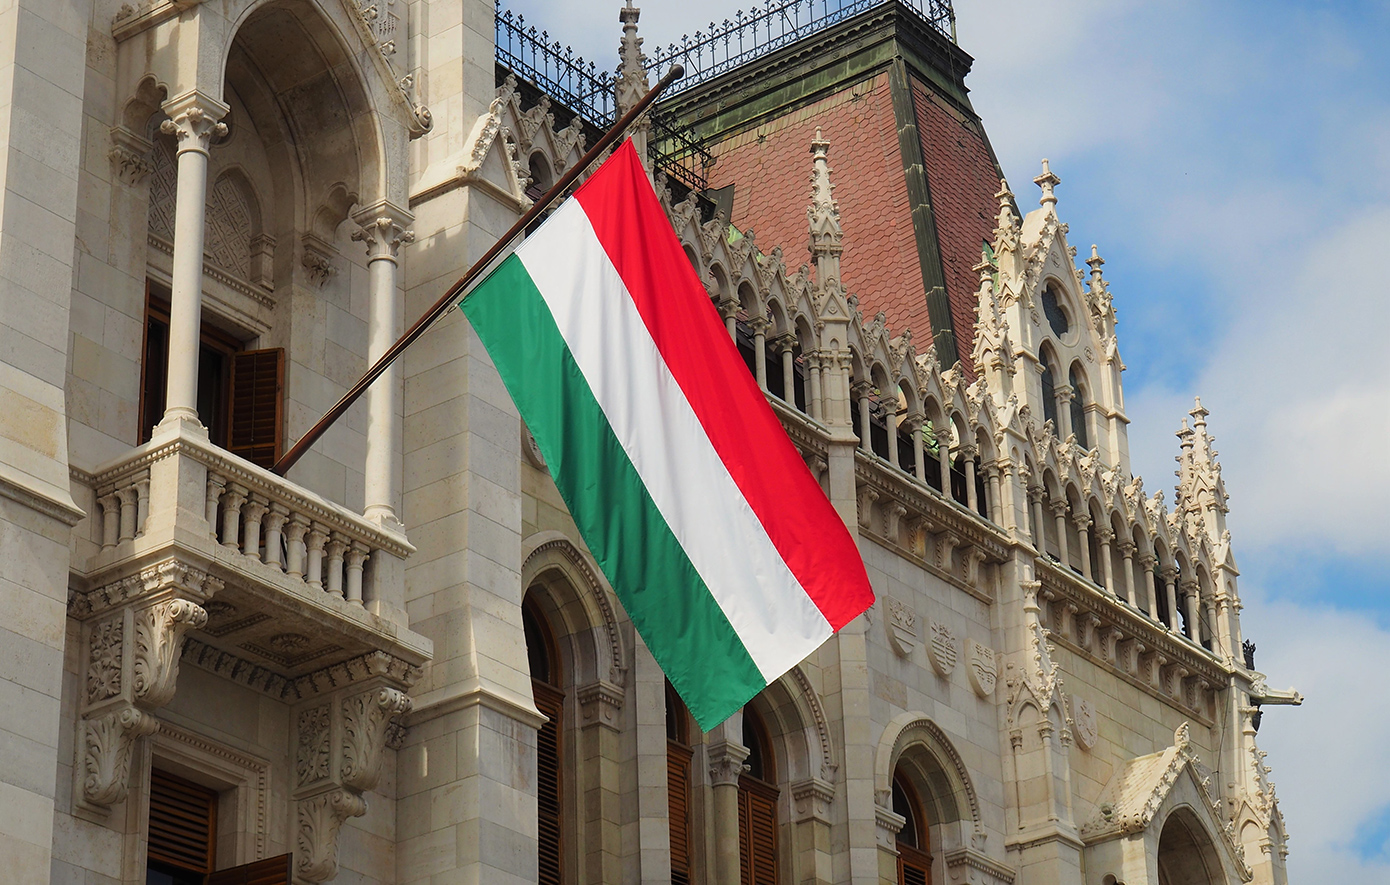 Κατά της Ουγγαρίας η Λιθουανία, η Εσθονία και η Ιταλία  &#8211; Καταγγέλλουν μπλοκάρισμα των αποφάσεων της εξωτερικής πολιτικής της ΕΕ